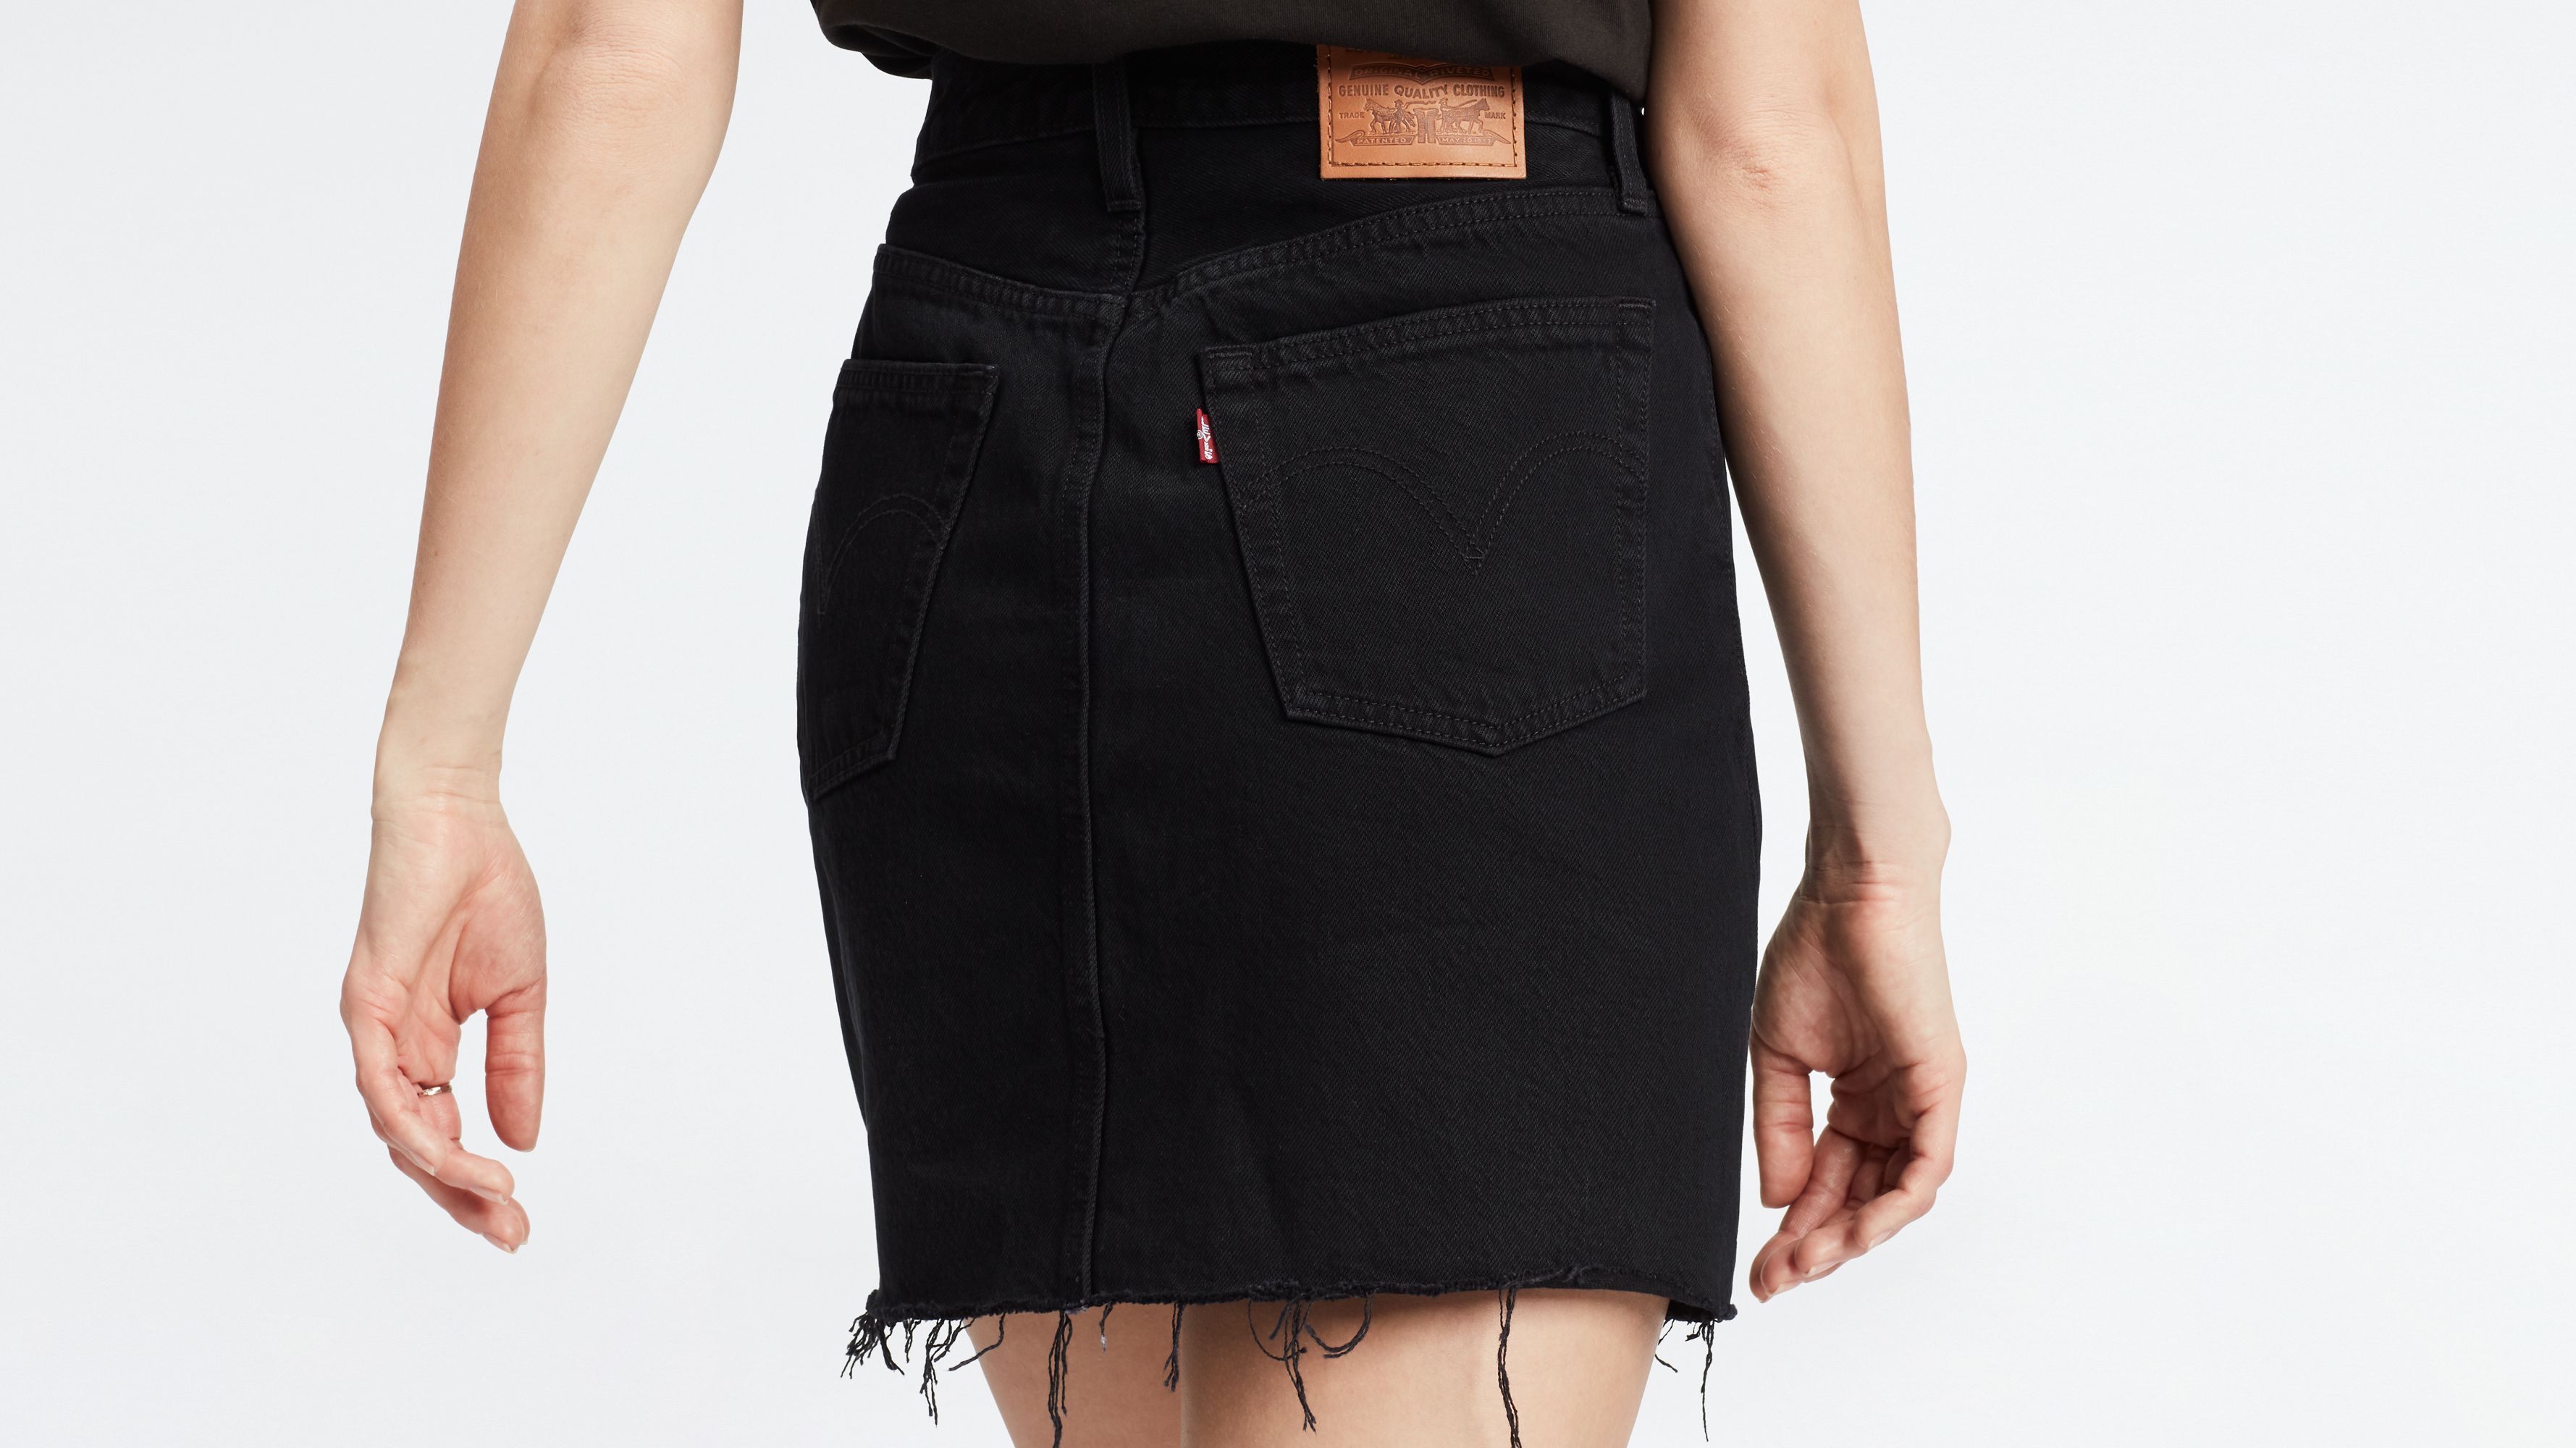 levis black skirt